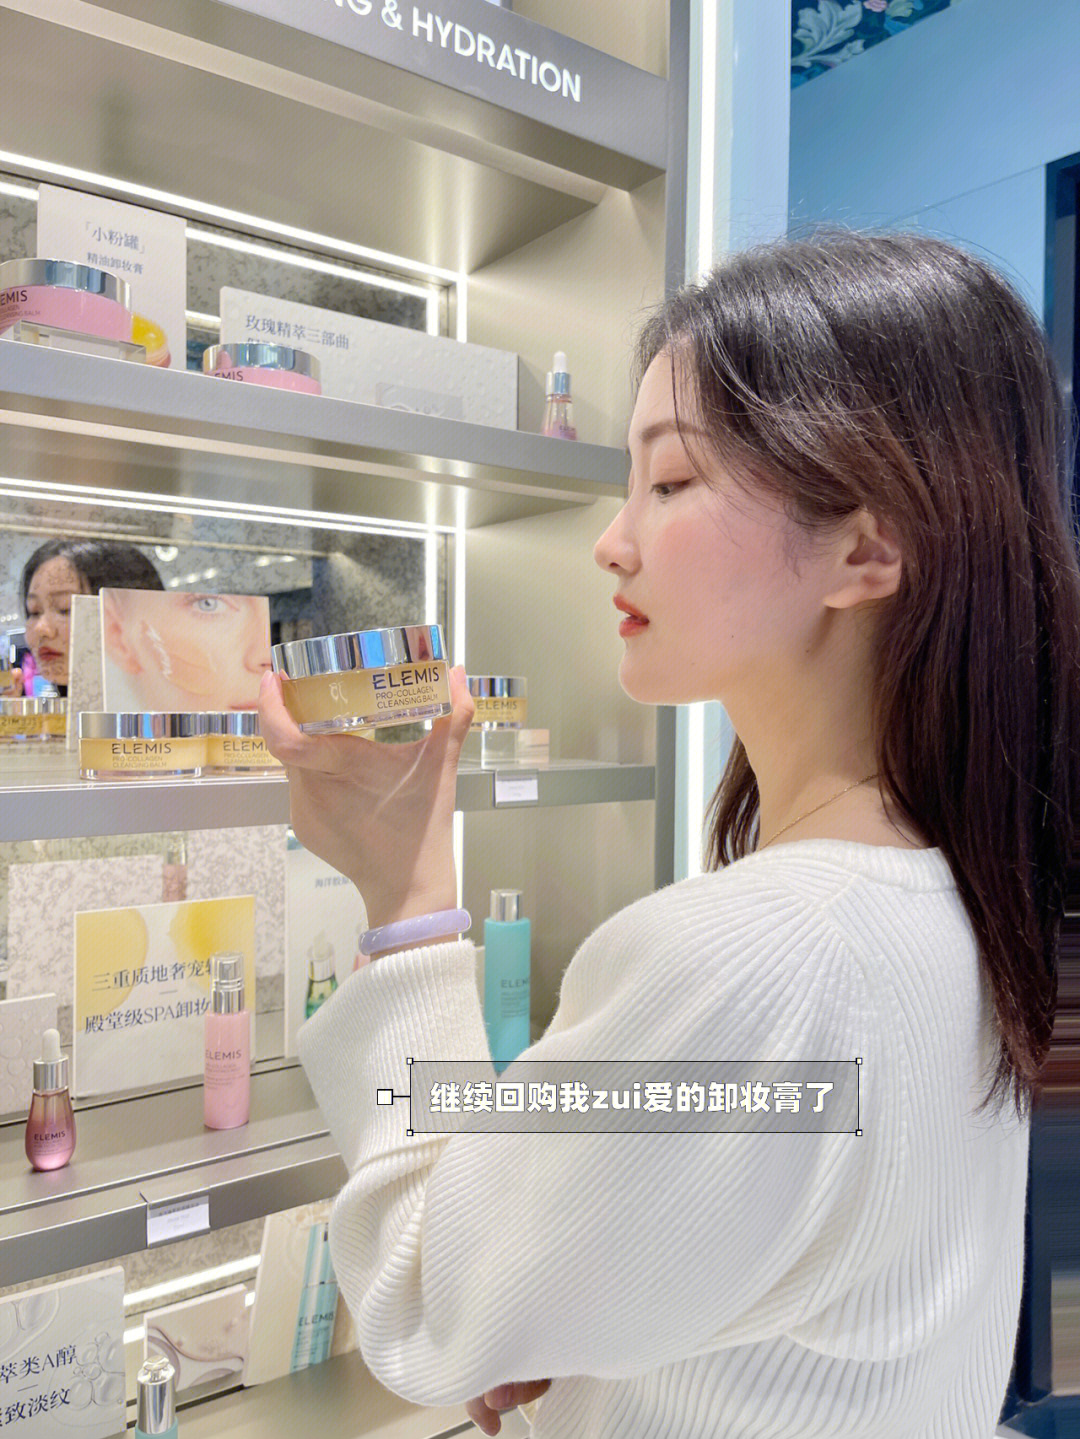 私藏的小众高端护肤品牌,南京也有实体店啦,就是elemis95夸一夸德基